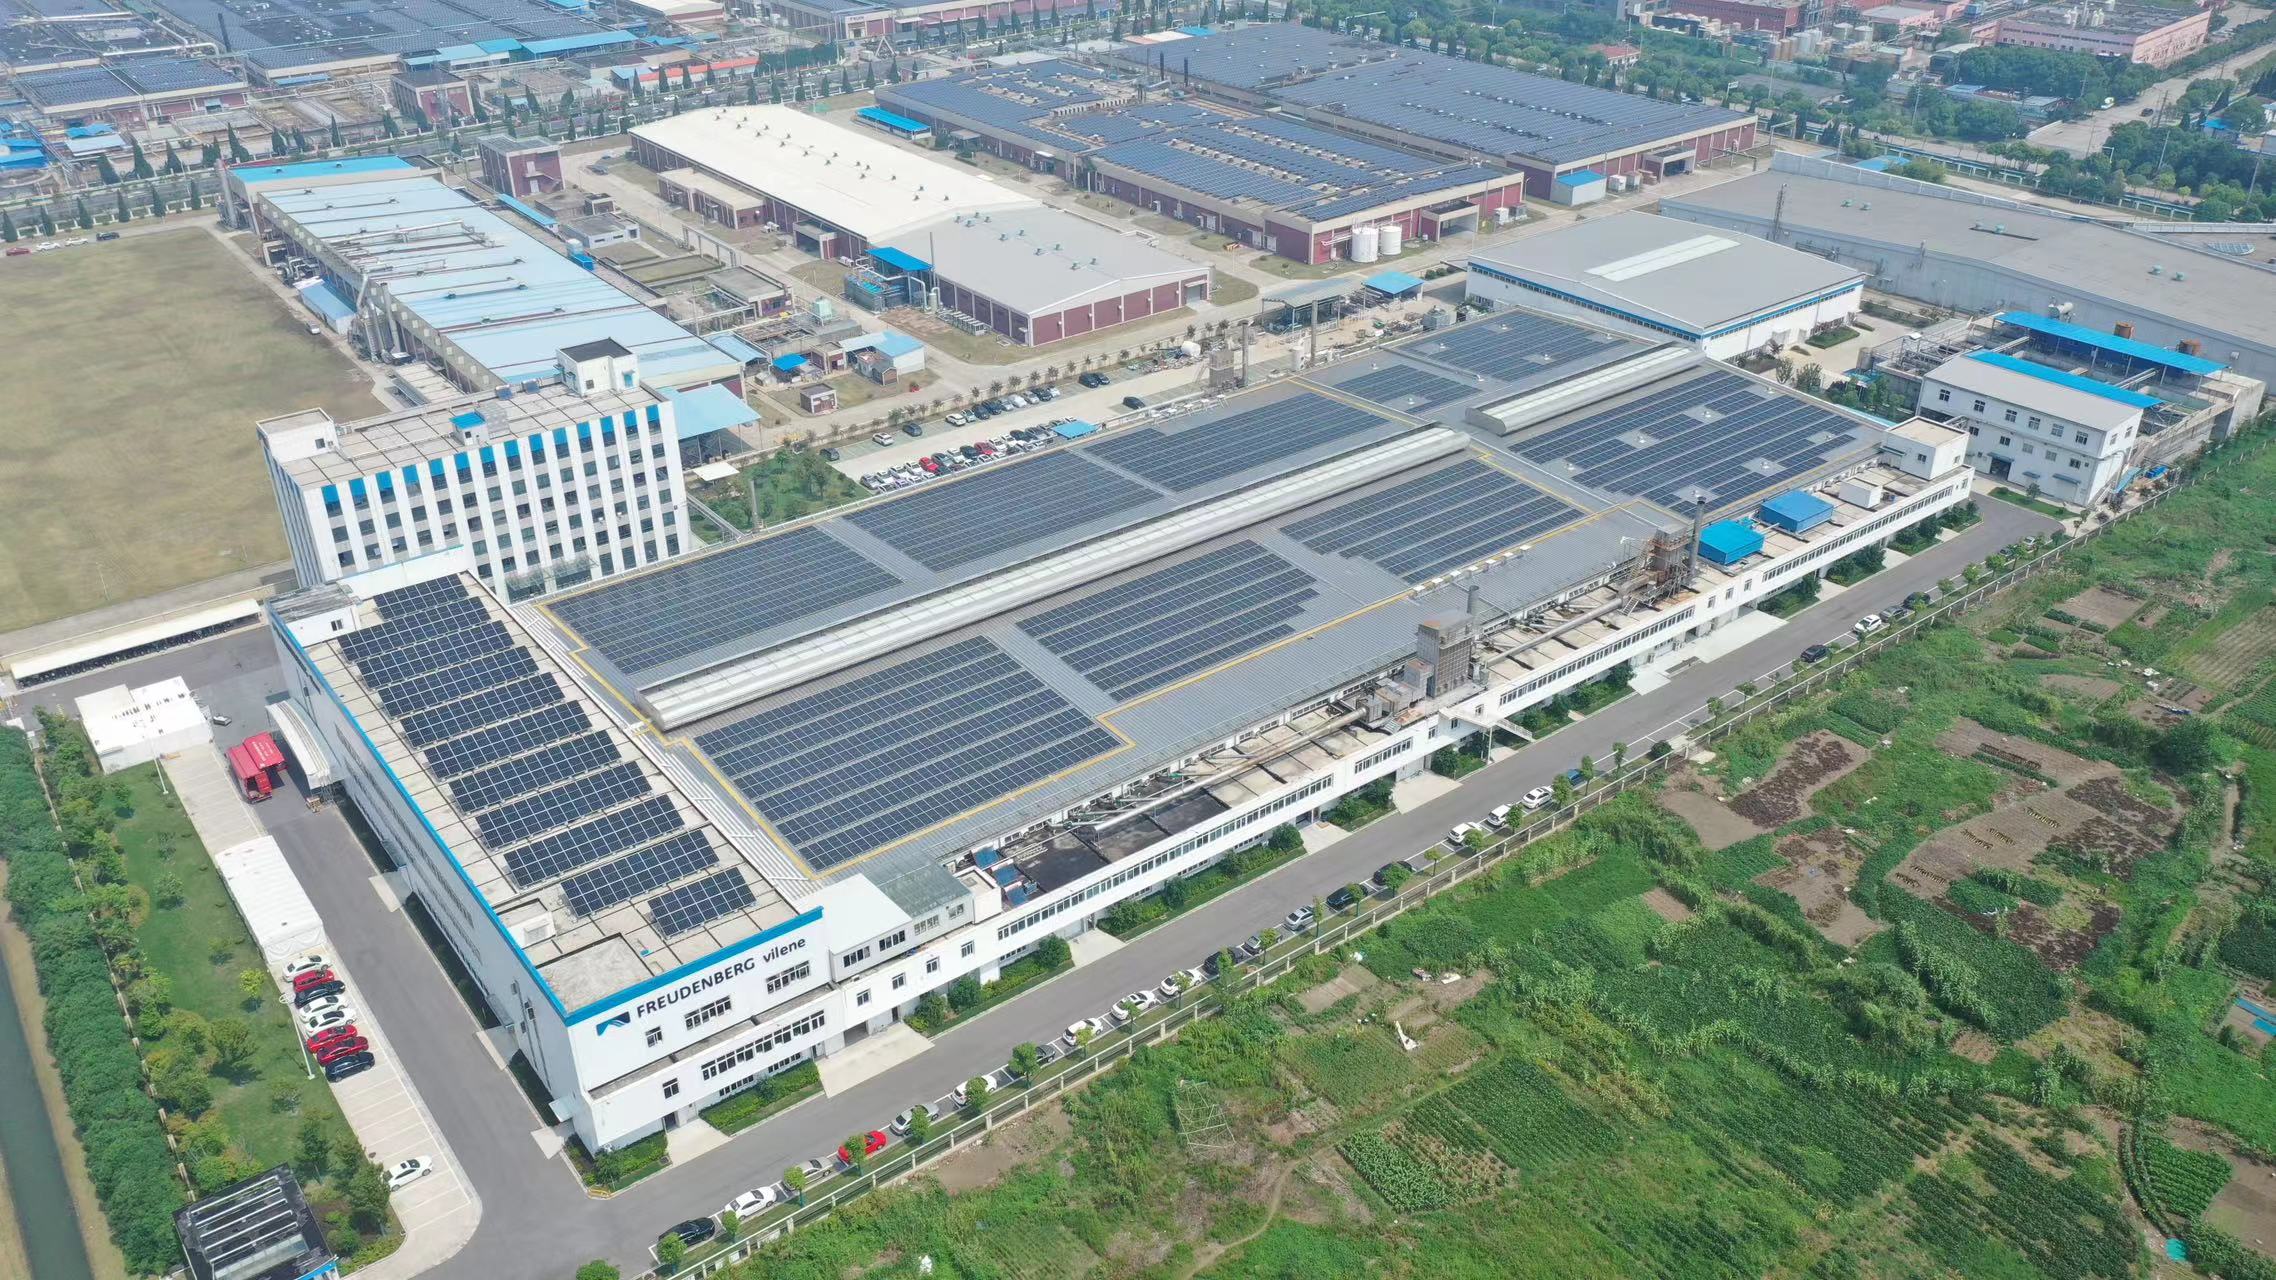 图片2：科德宝高性能材料集团南通工厂光伏发电项目面积达13,000平方米，约等于31个标准篮球场的大小.jpg